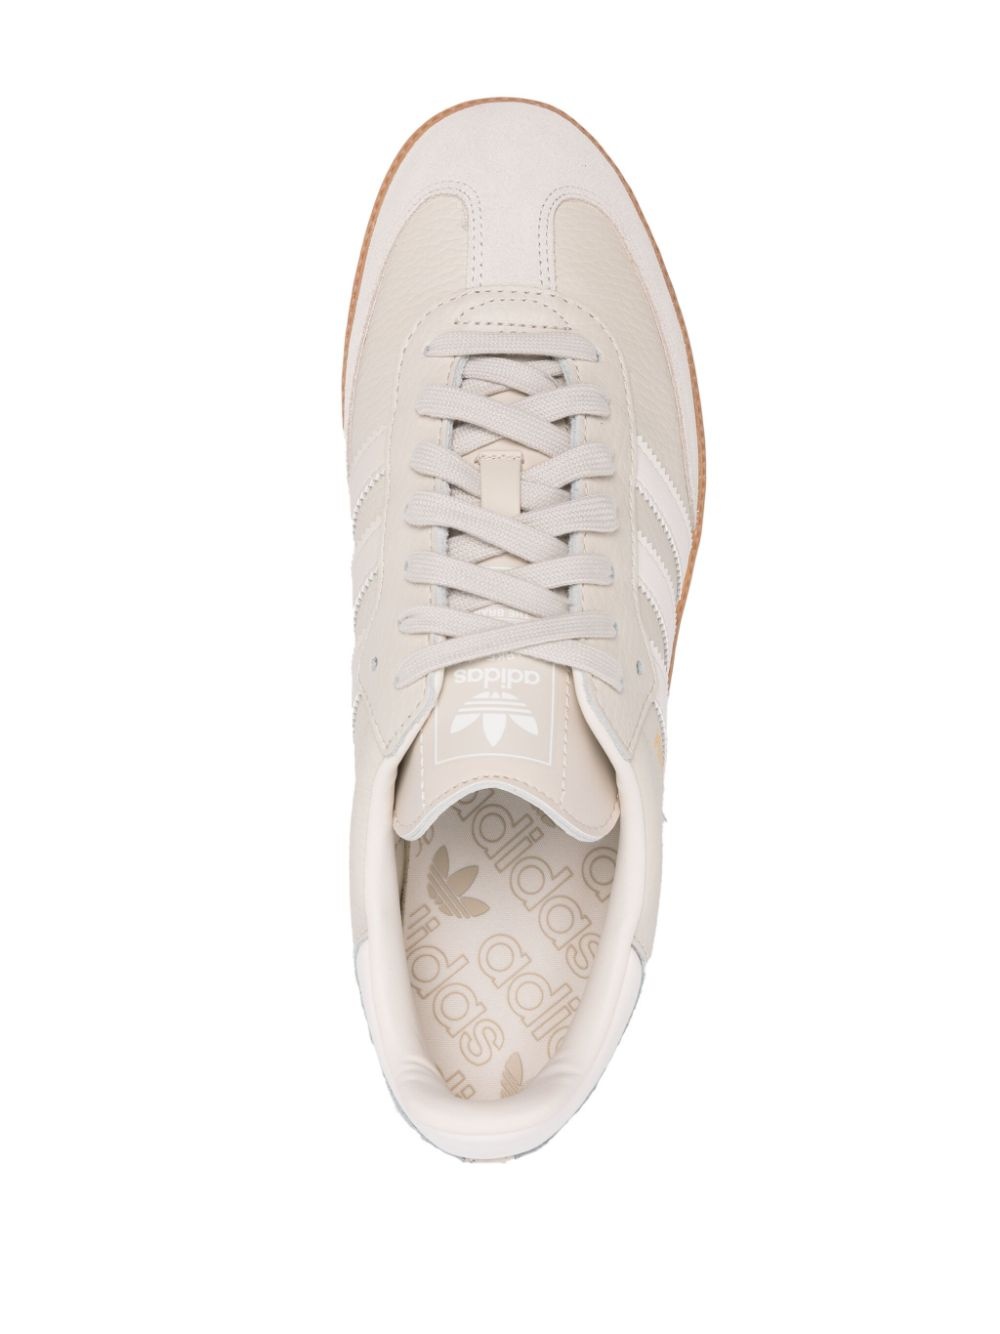 Samba OG "Beige/White" sneakers - 4